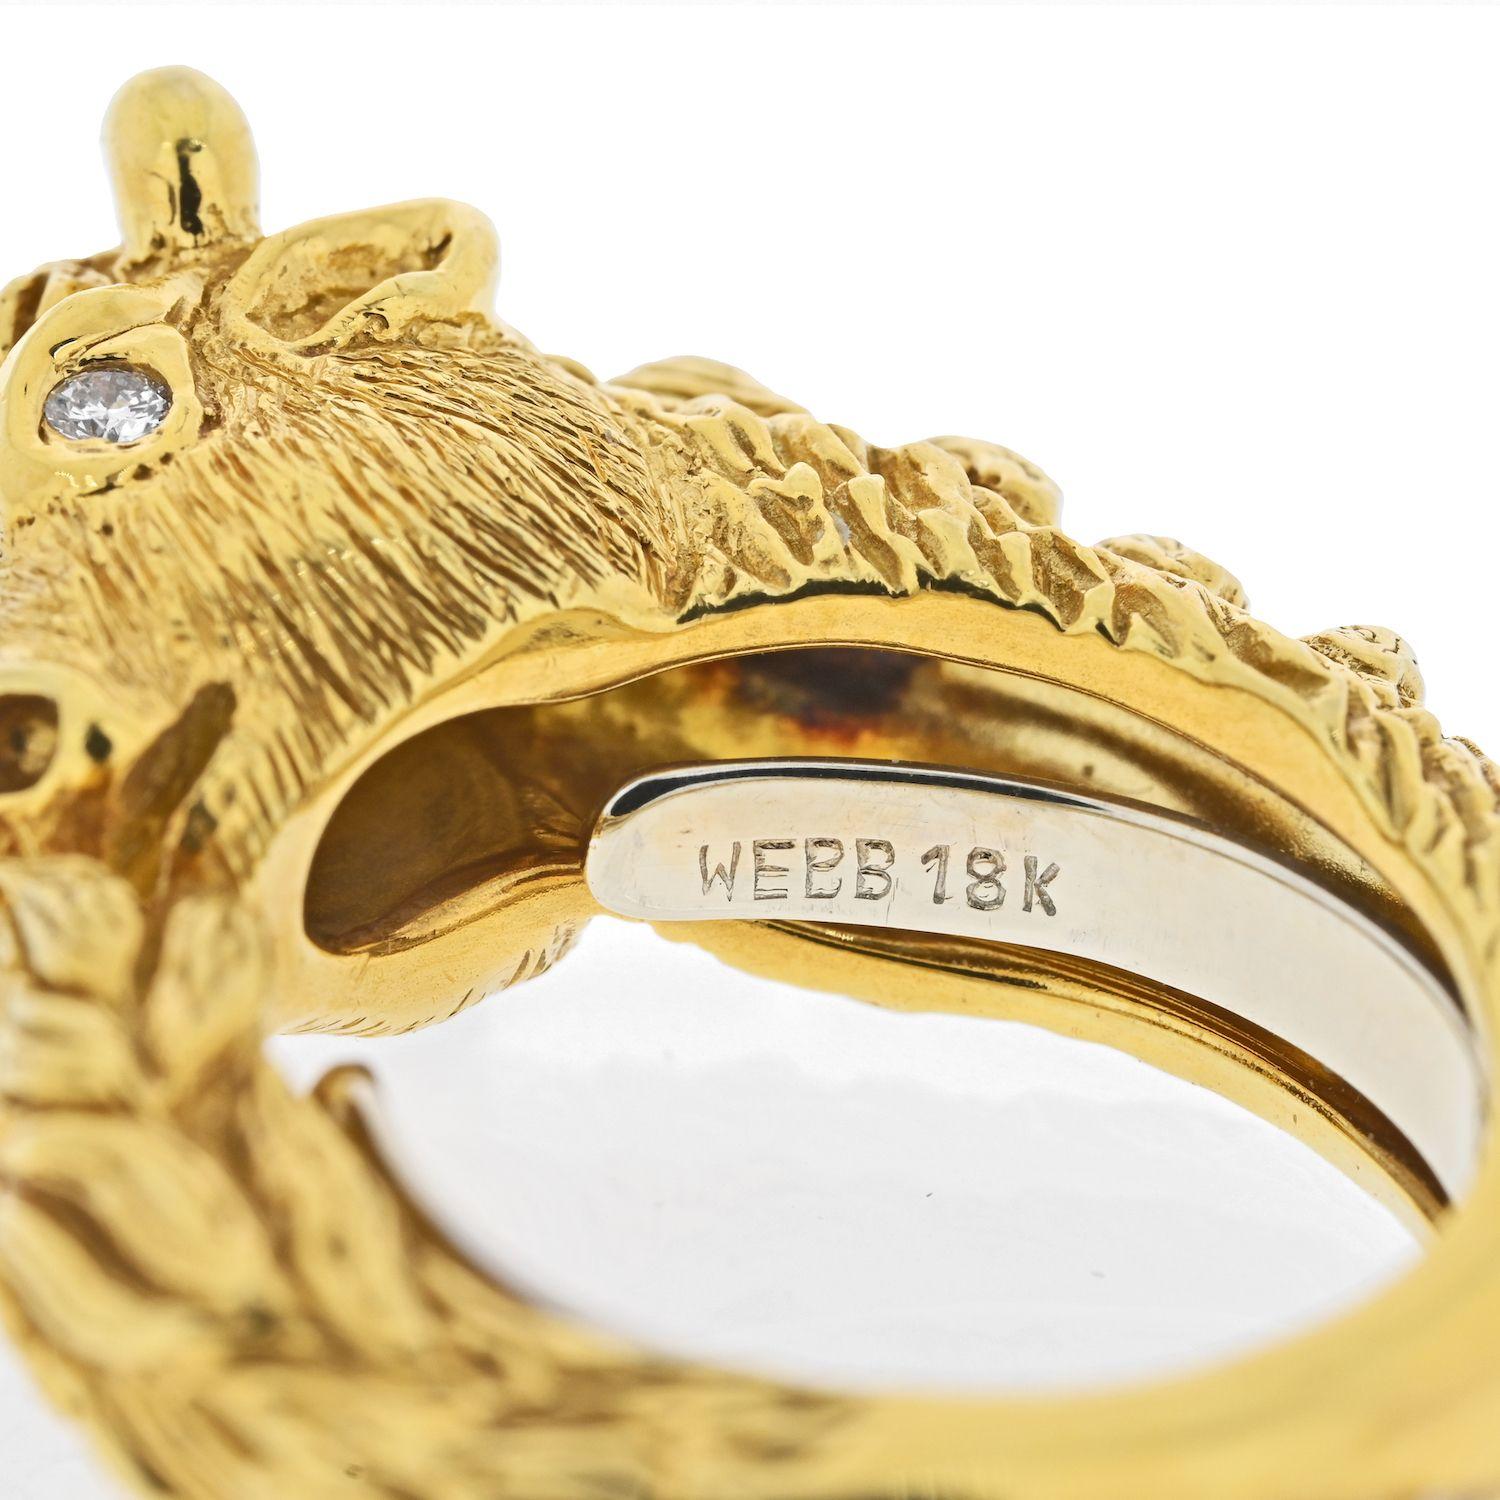 Cette jolie bague en or jaune de la collection Kingdom est conçue en forme de taureau par David Webb.
Fabriqué en or jaune 18 carats ; serti d'un diamant rond de taille brillant ; mesure 1/2 pouce à la section la plus large, 1/2 pouce de hauteur ;